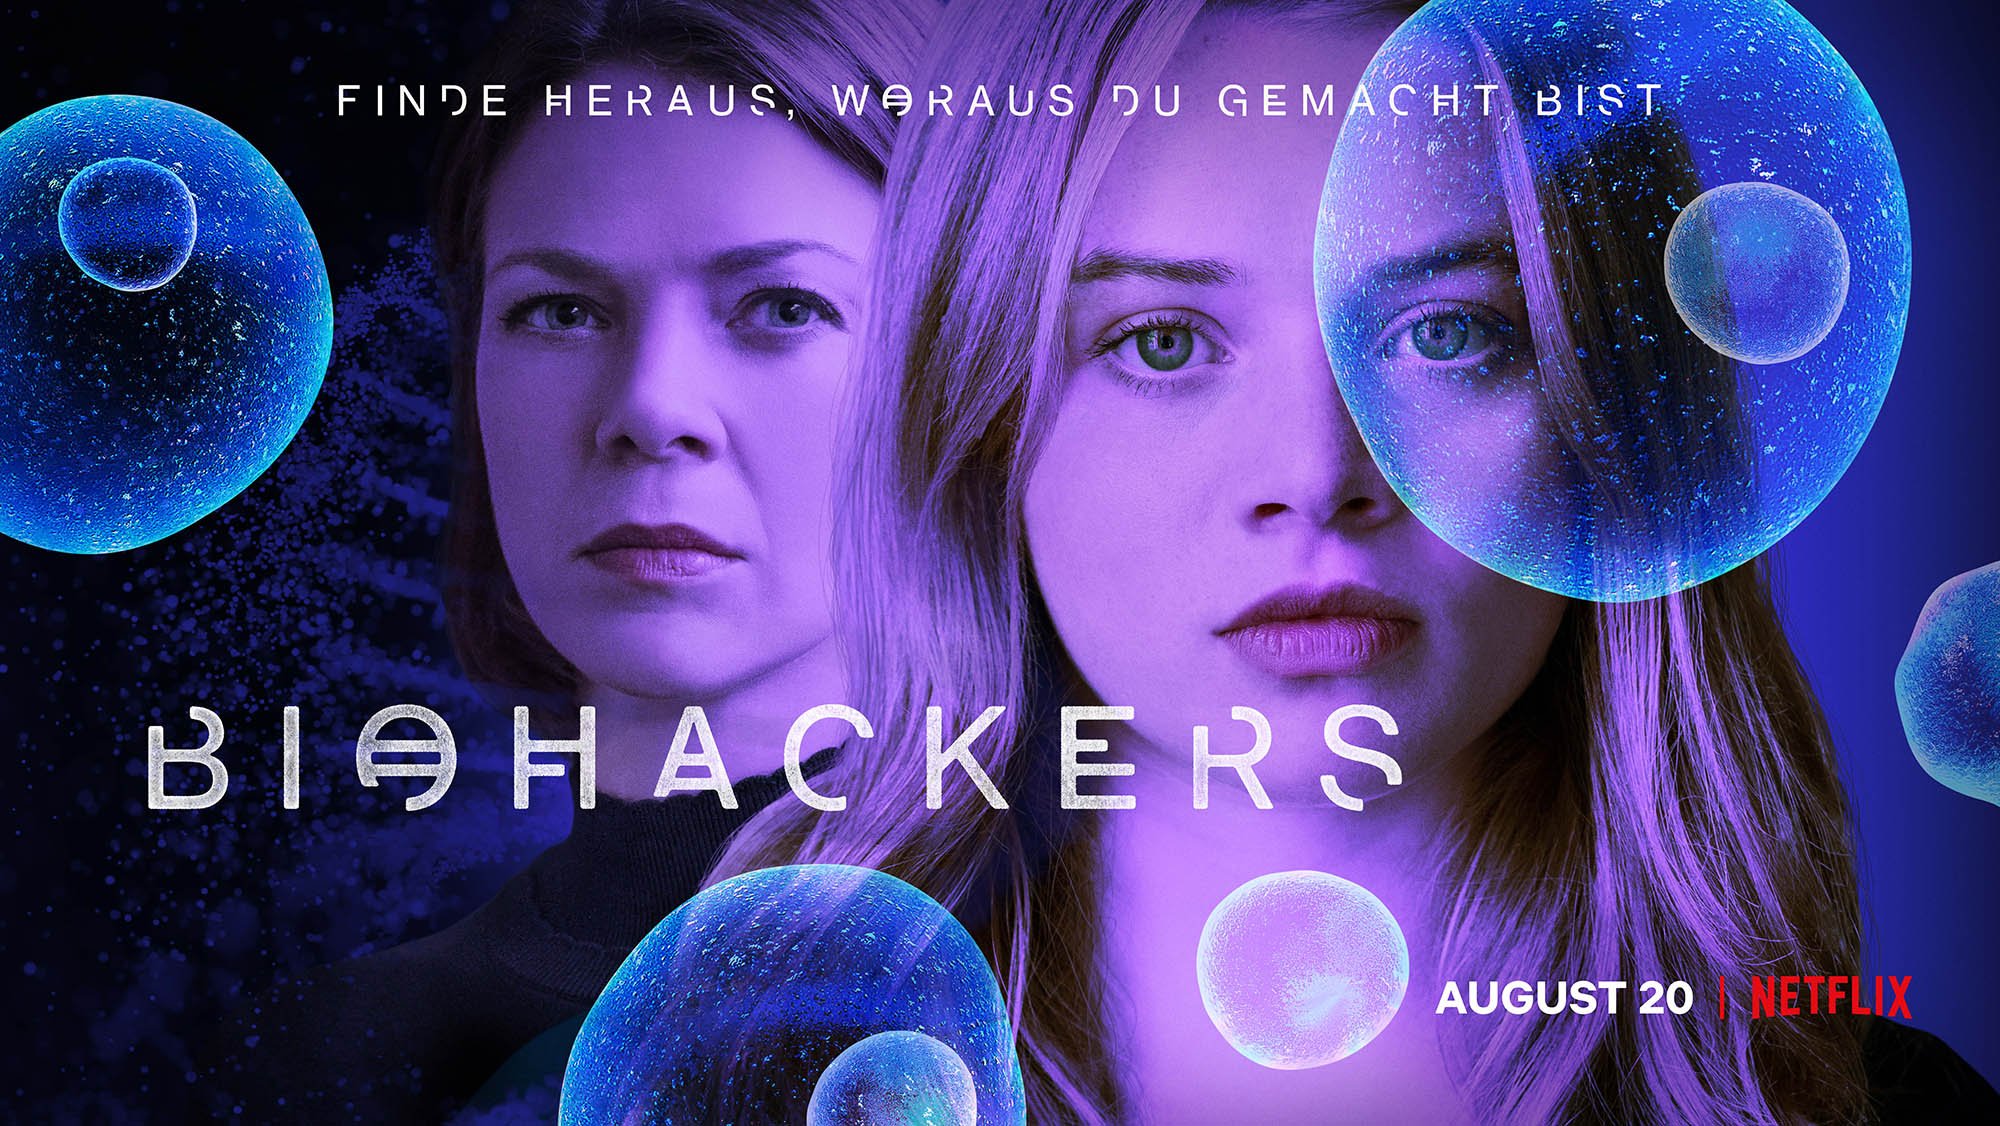 Biohackers Trailer Und Poster Zum Netflix Original Start Am 20 August 2020 Seriesly Awesome